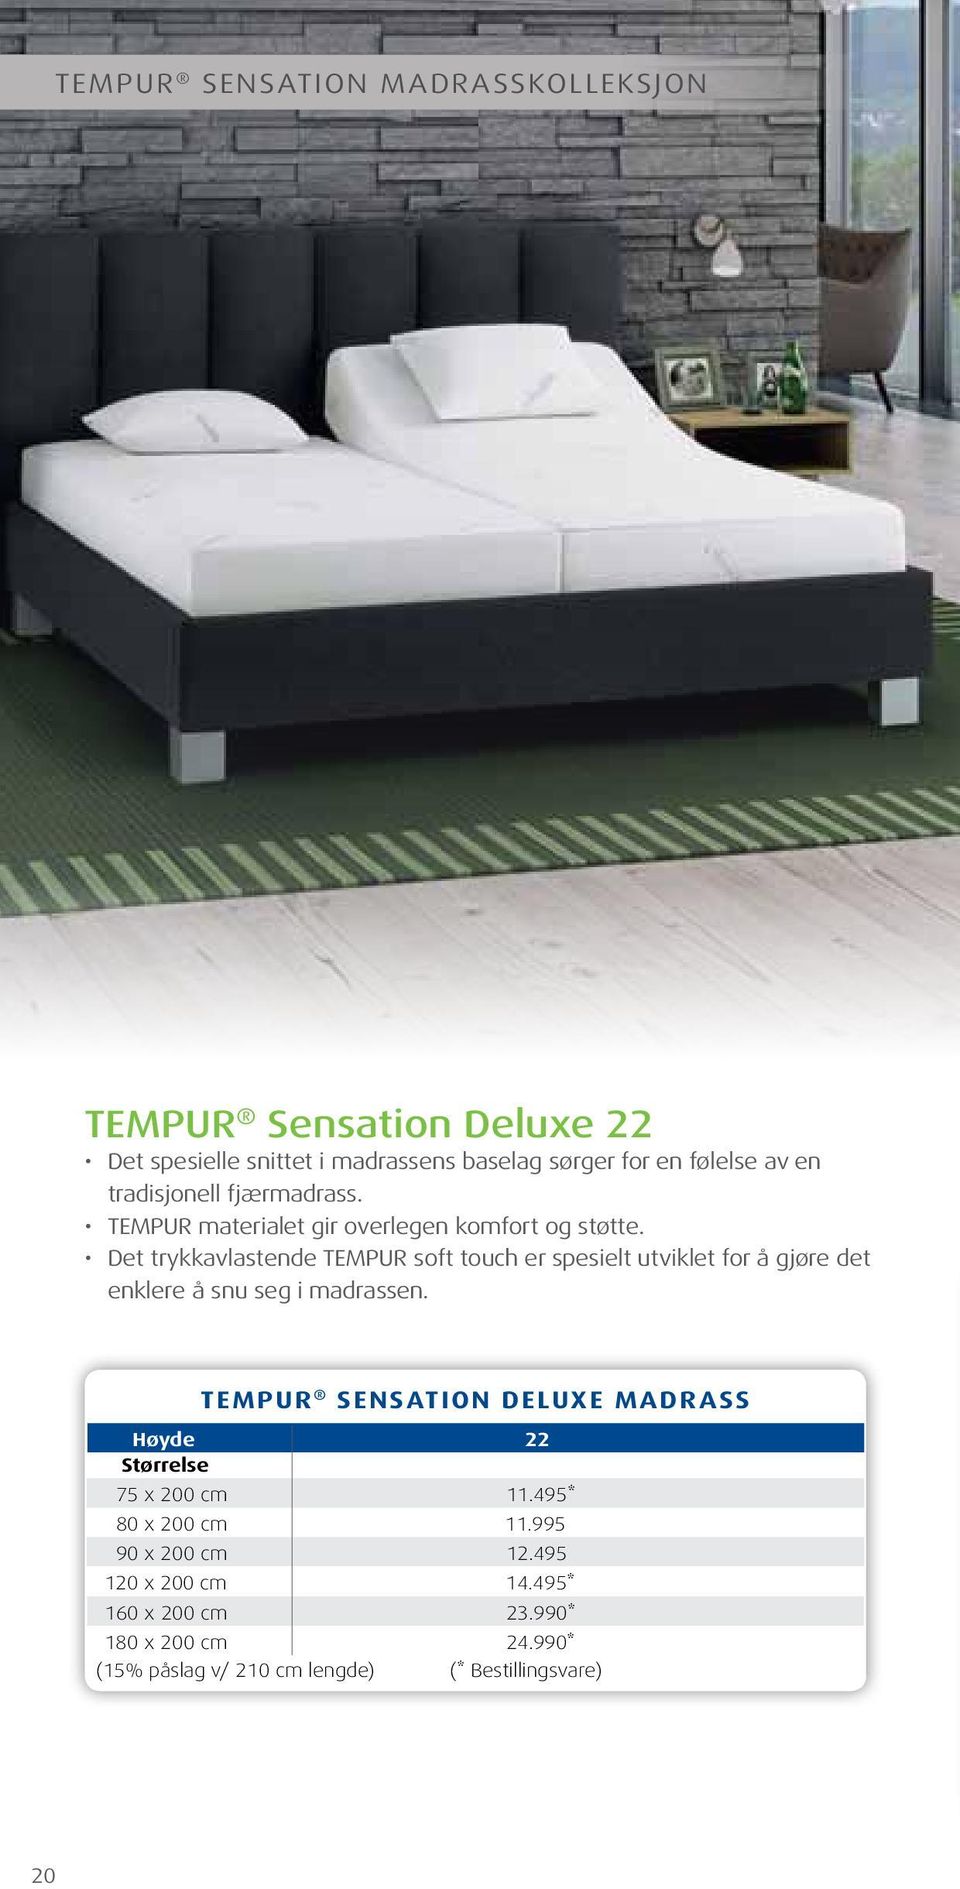 Det trykkavlastende TEMPUR soft touch er spesielt utviklet for å gjøre det enklere å snu seg i madrassen.